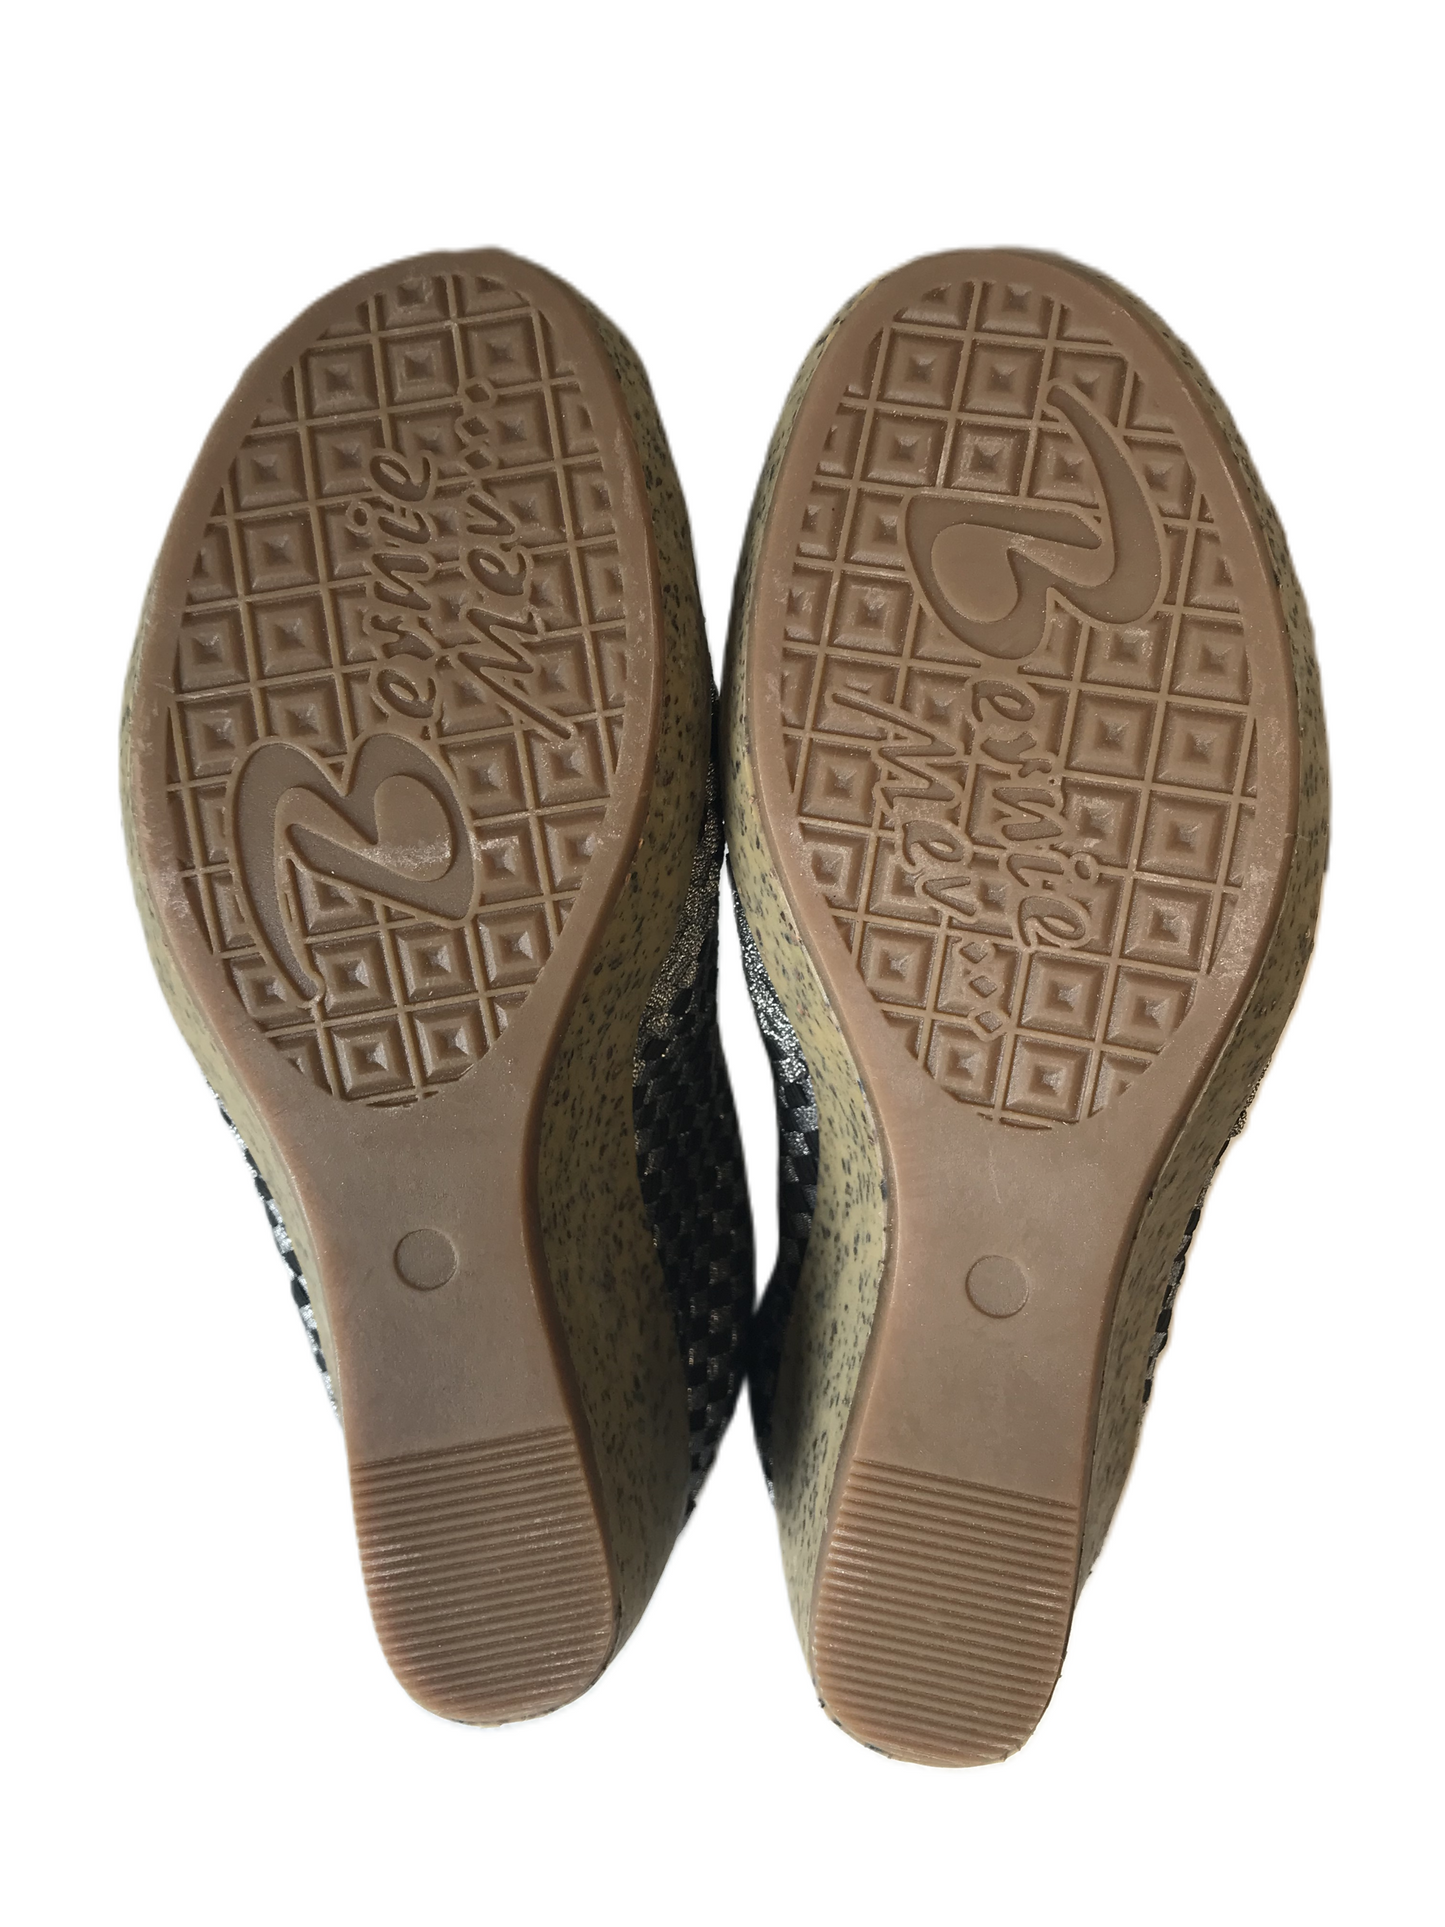 Sandals Heels Wedge By Bernie Mev  Size: 11.5